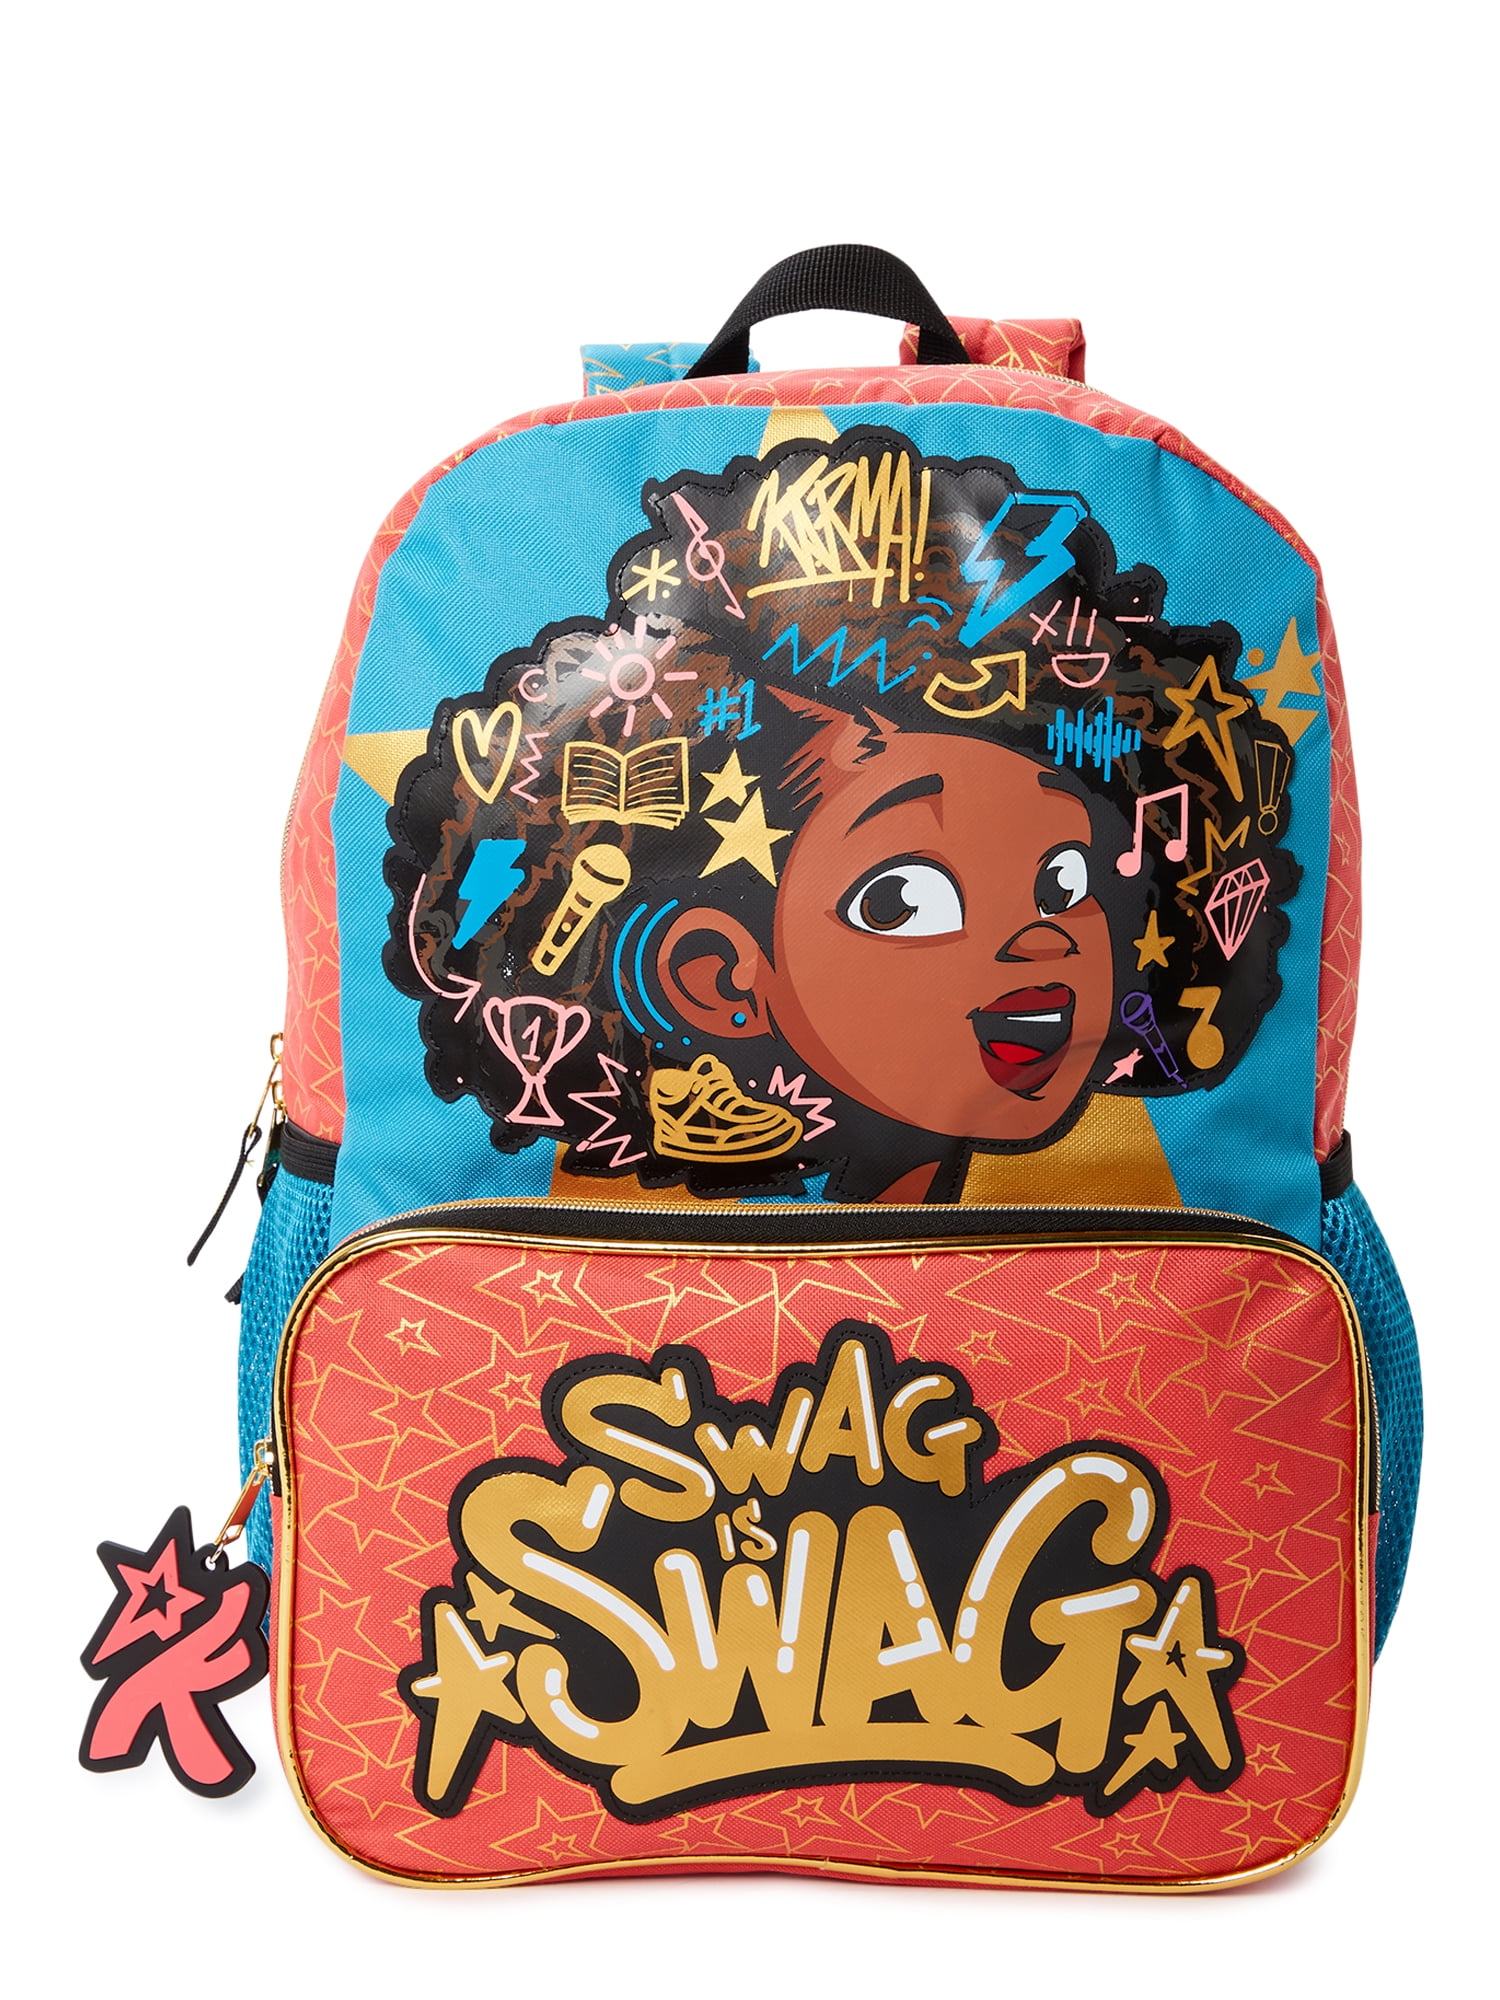 Kids Boys Girls Children Nursery Character School Bag Backpack Rucksack Cars 